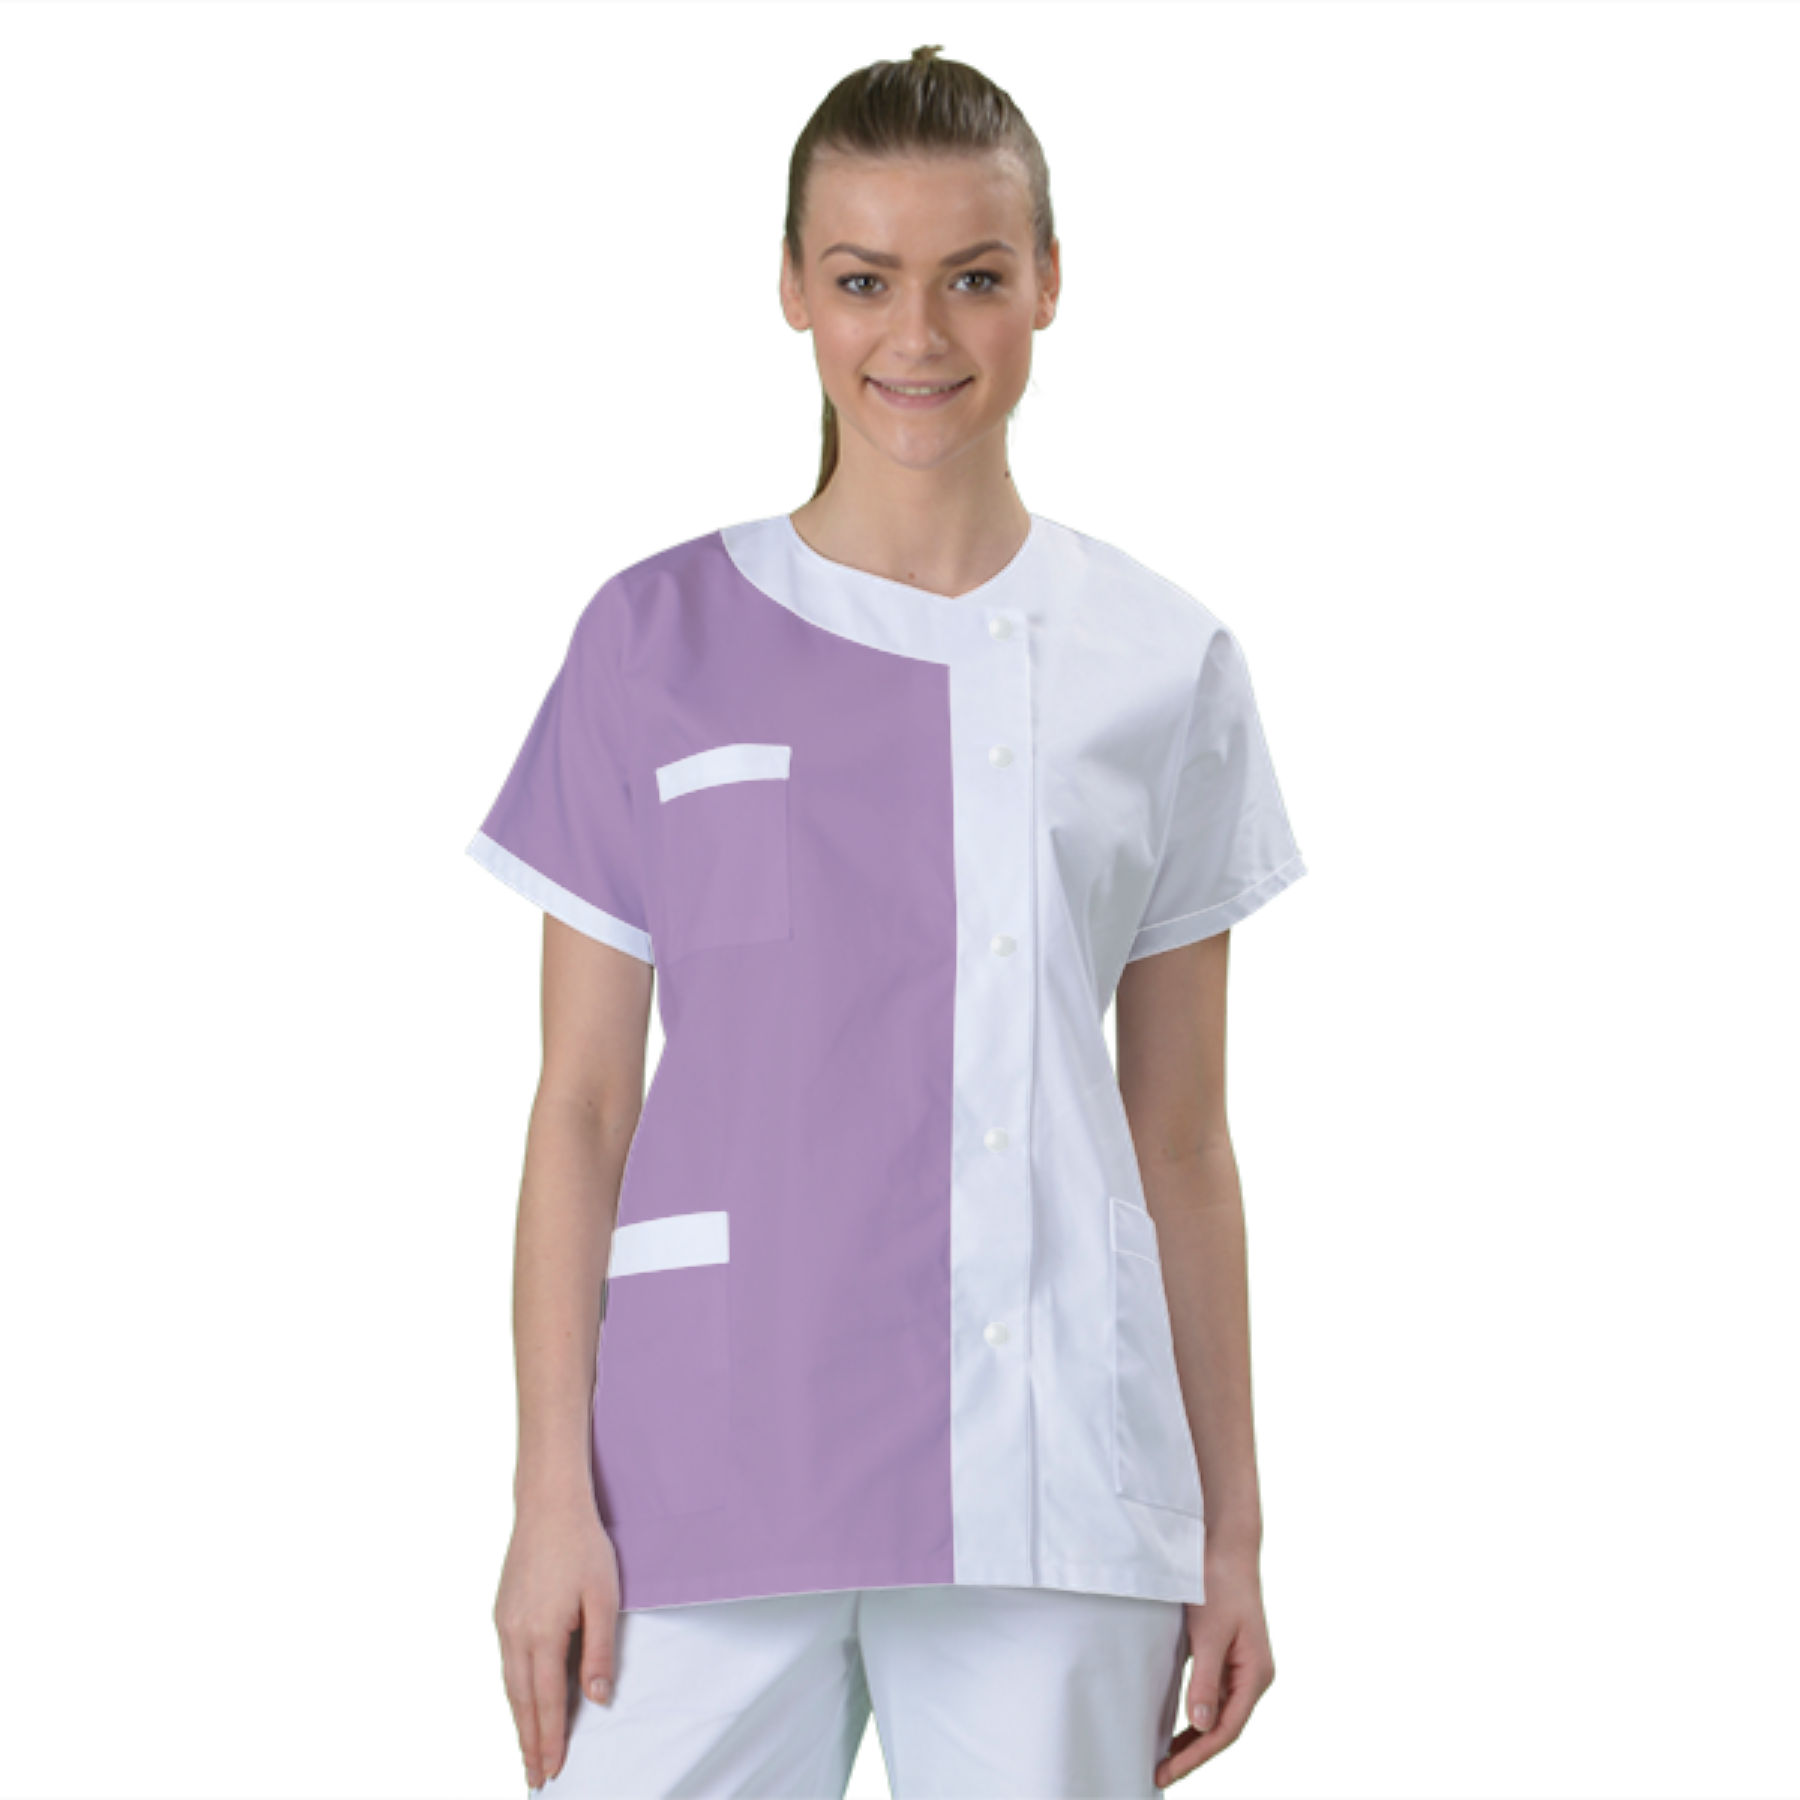 blouse-medicale-col-carre-a-personnaliser acheté - par Sabrina - le 19-10-2021